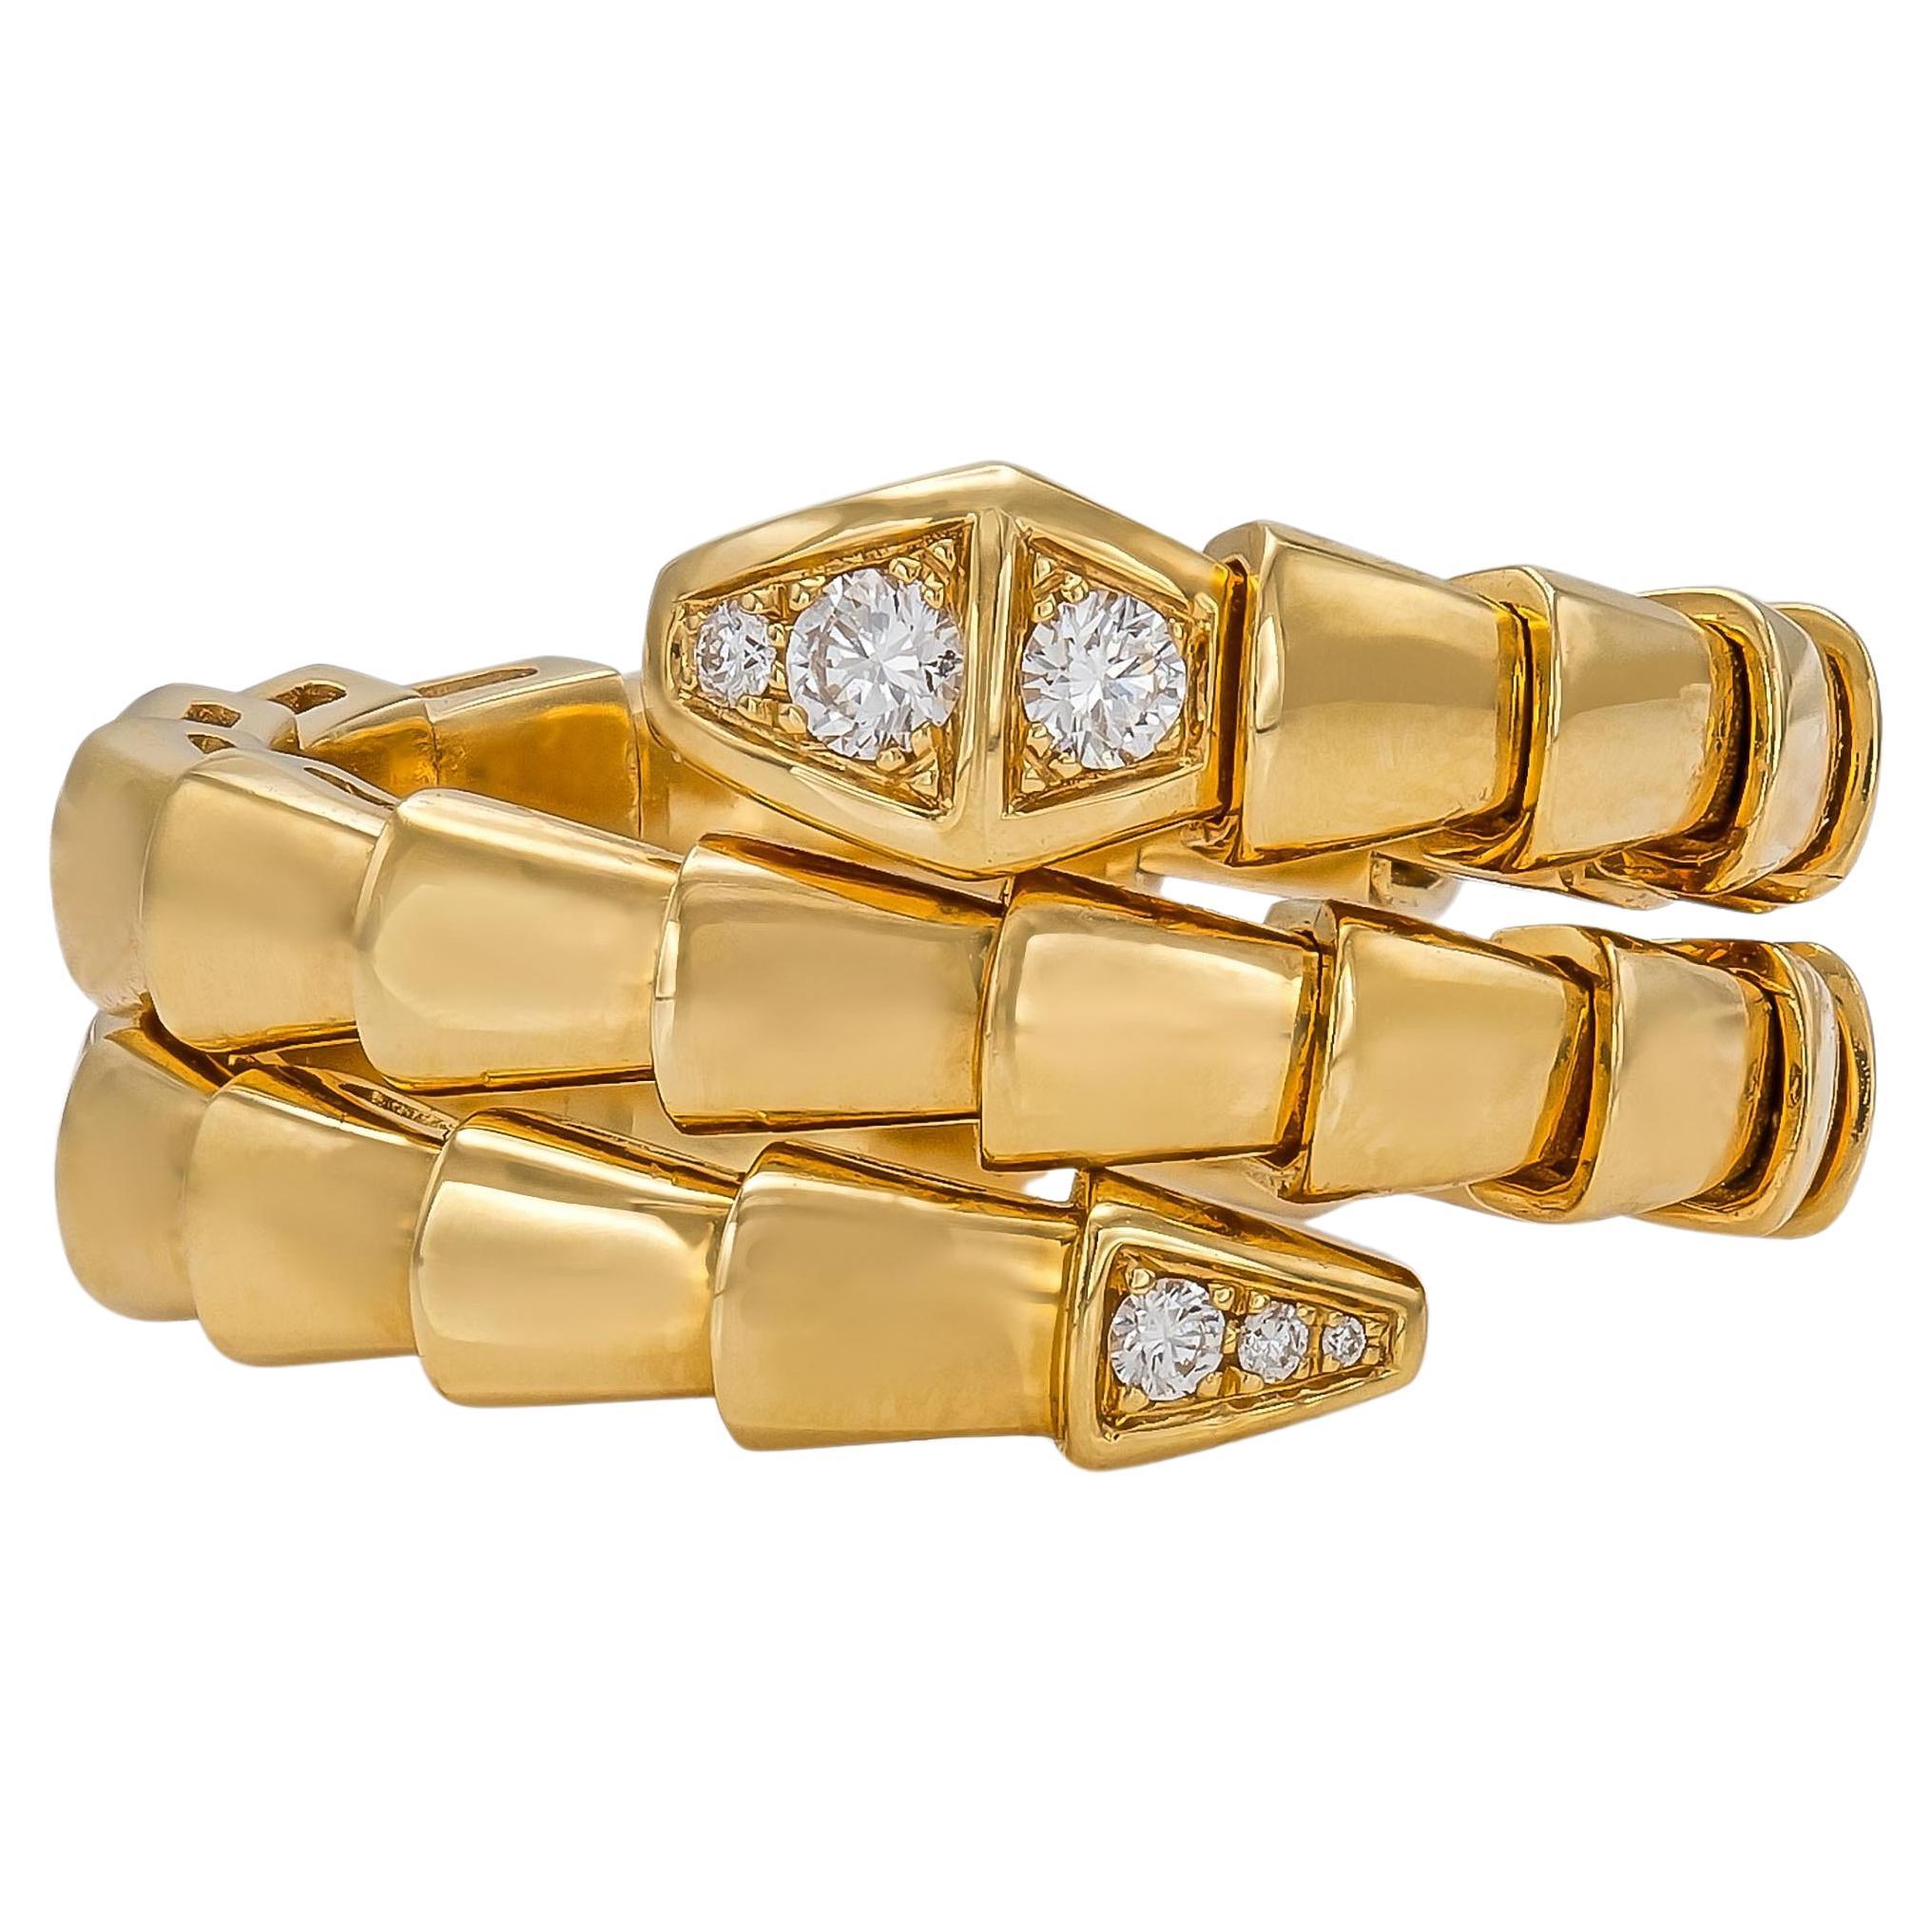 Bvlgari Serpenti Viper 2 Coil Ring with Diamonds For Sale